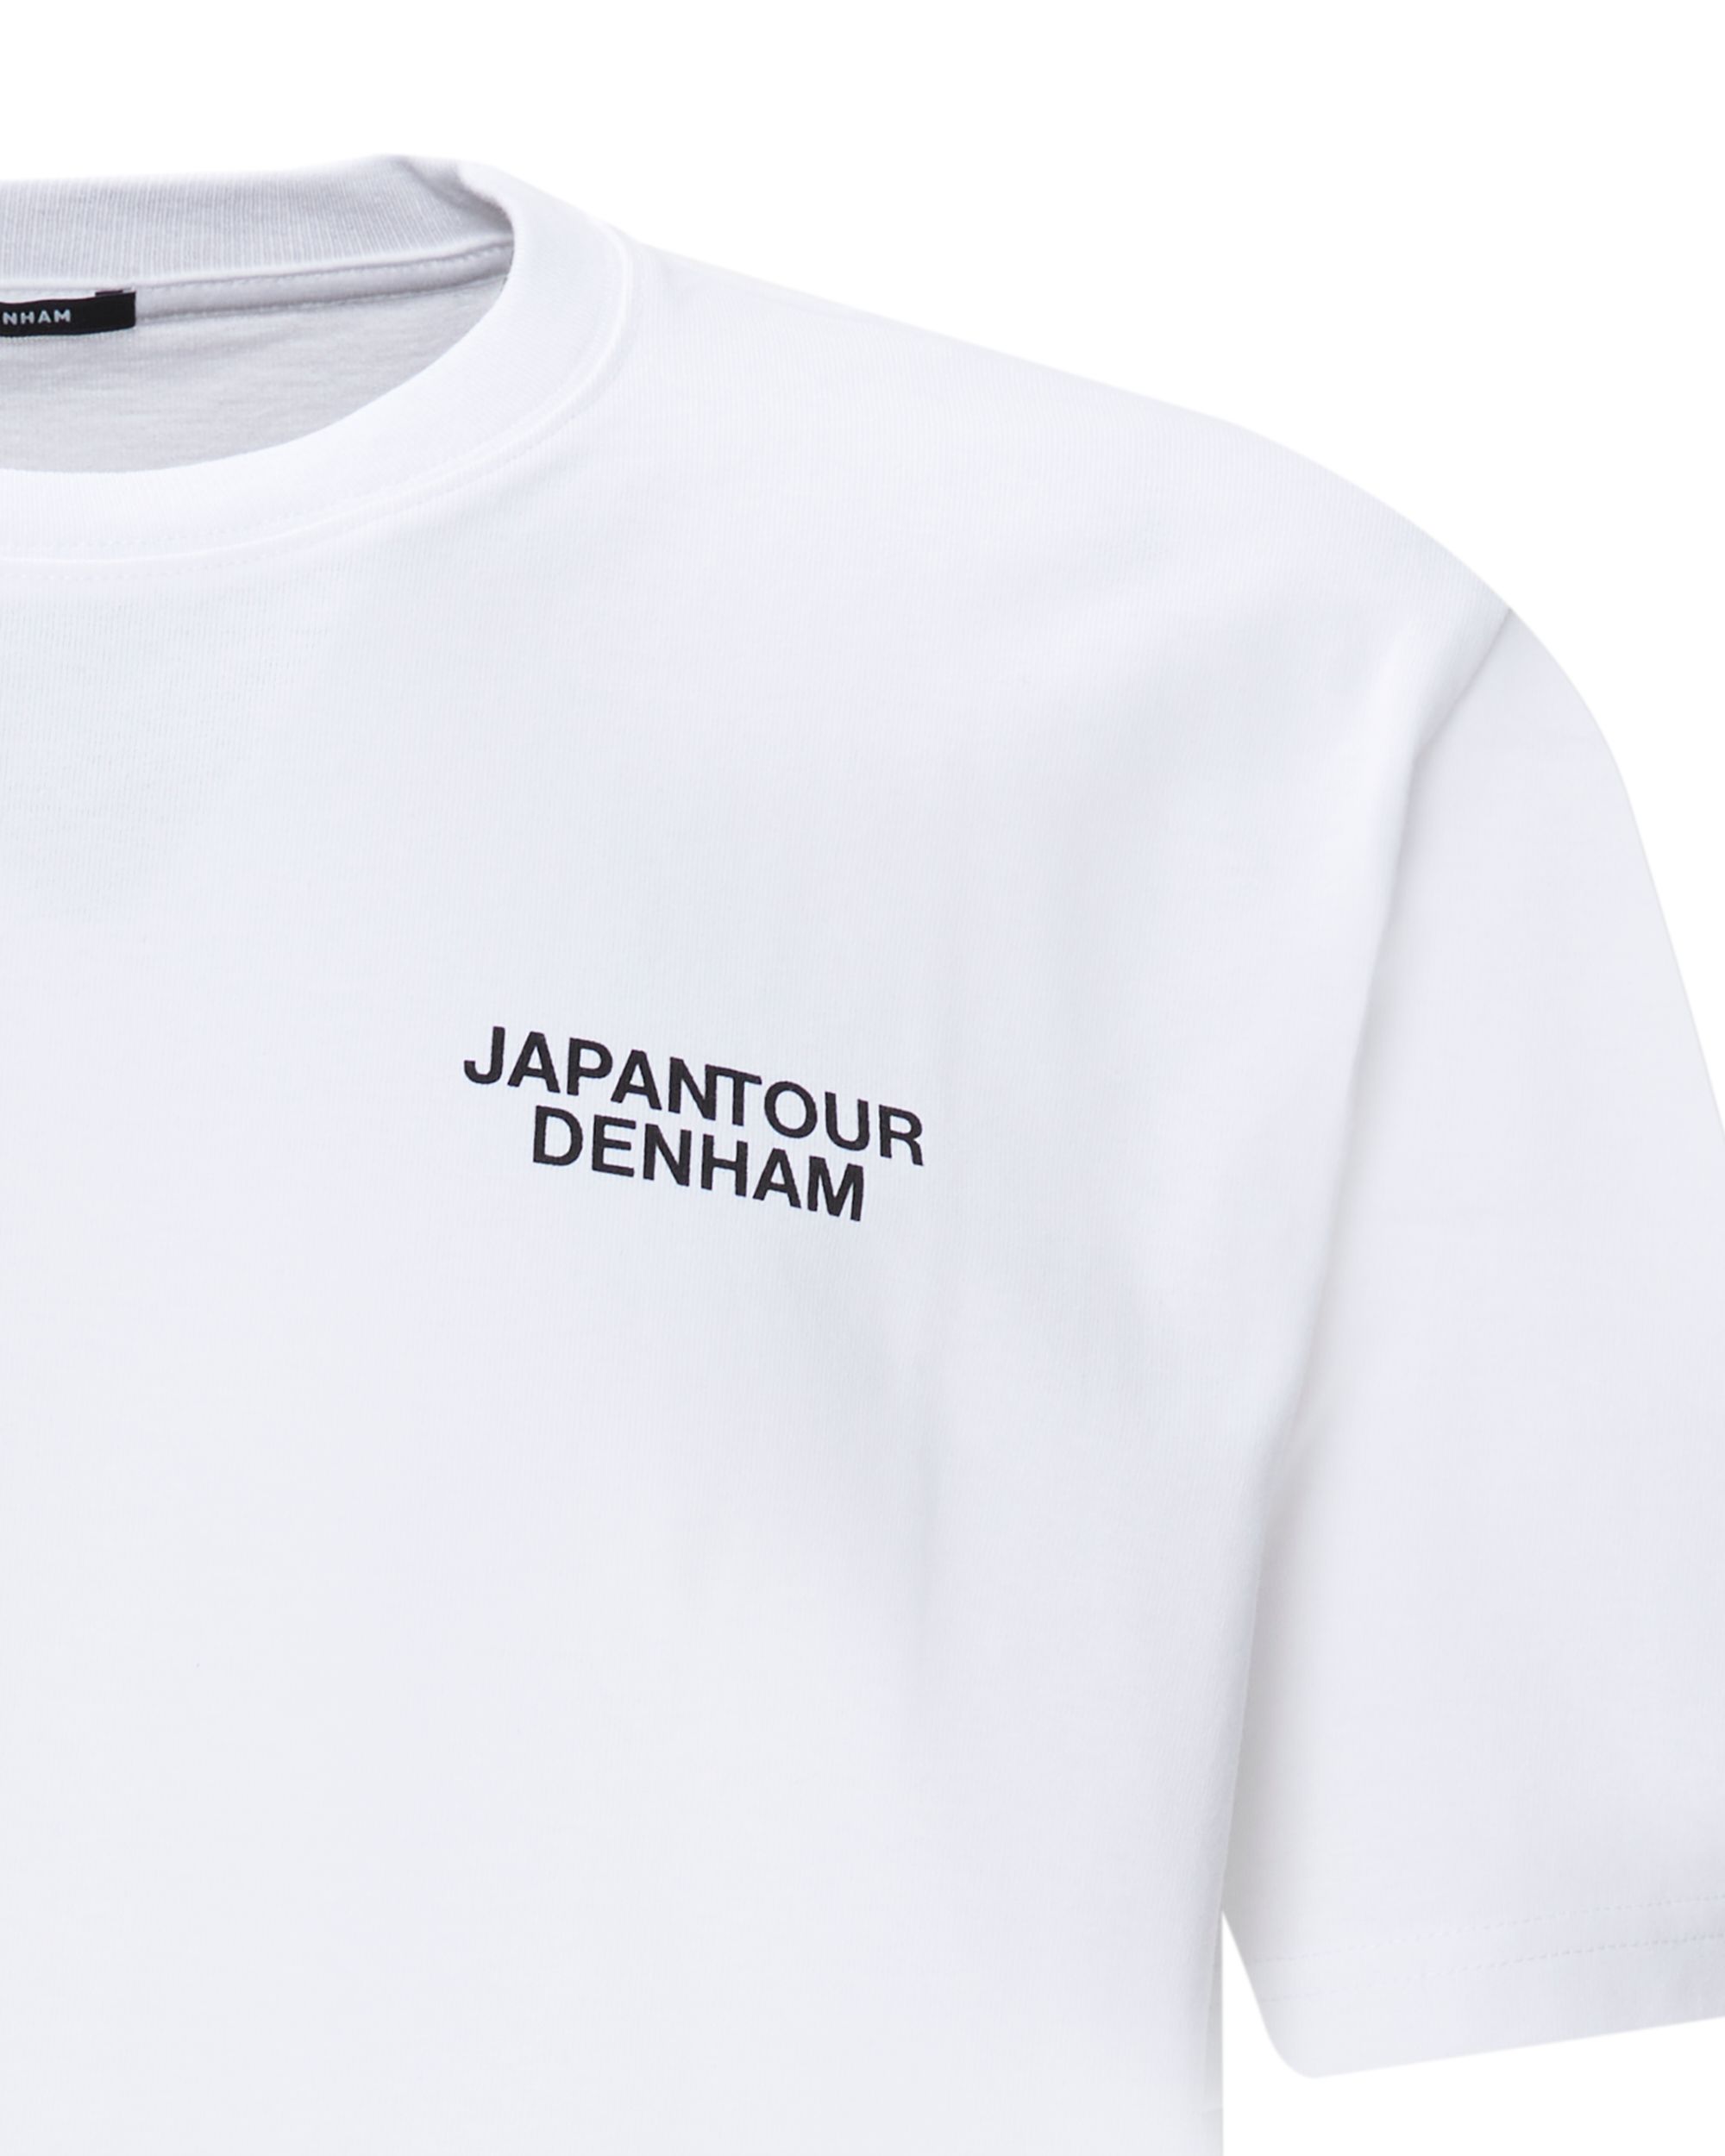 DENHAM Shigo T-shirt KM Wit 081249-001-L